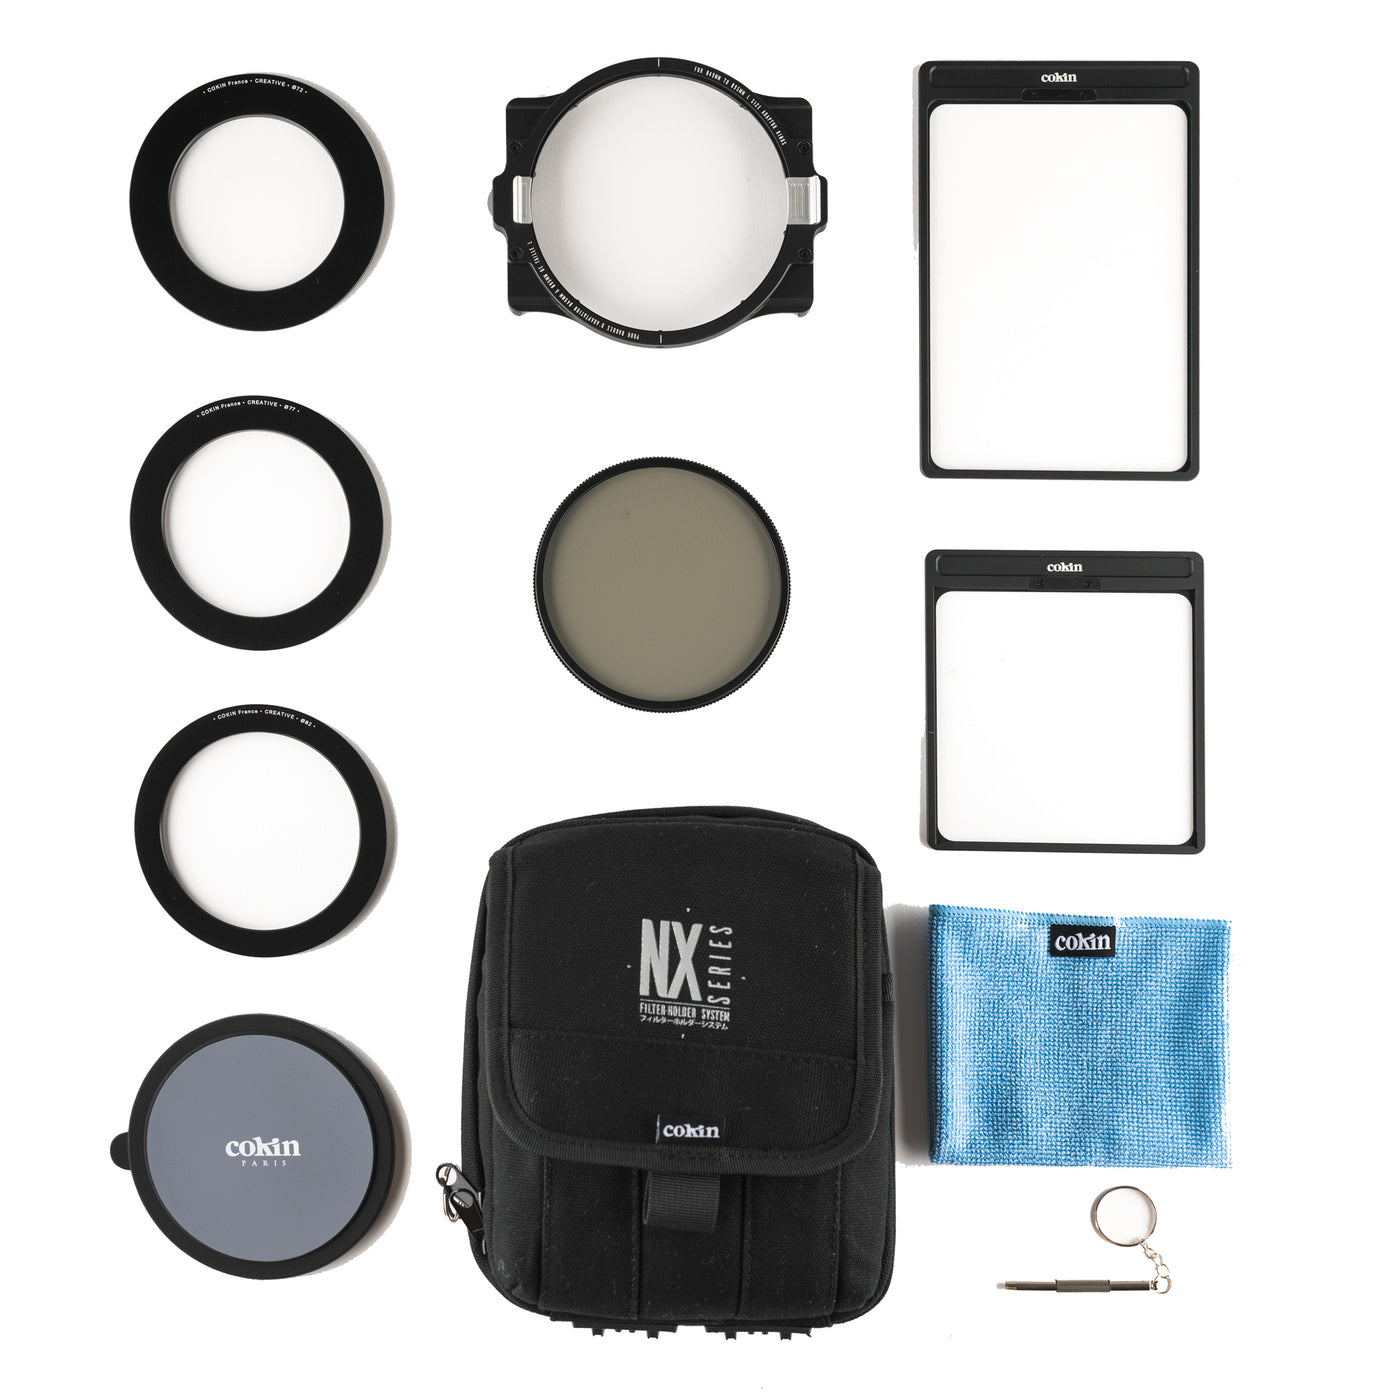 NX Series Starter Kit